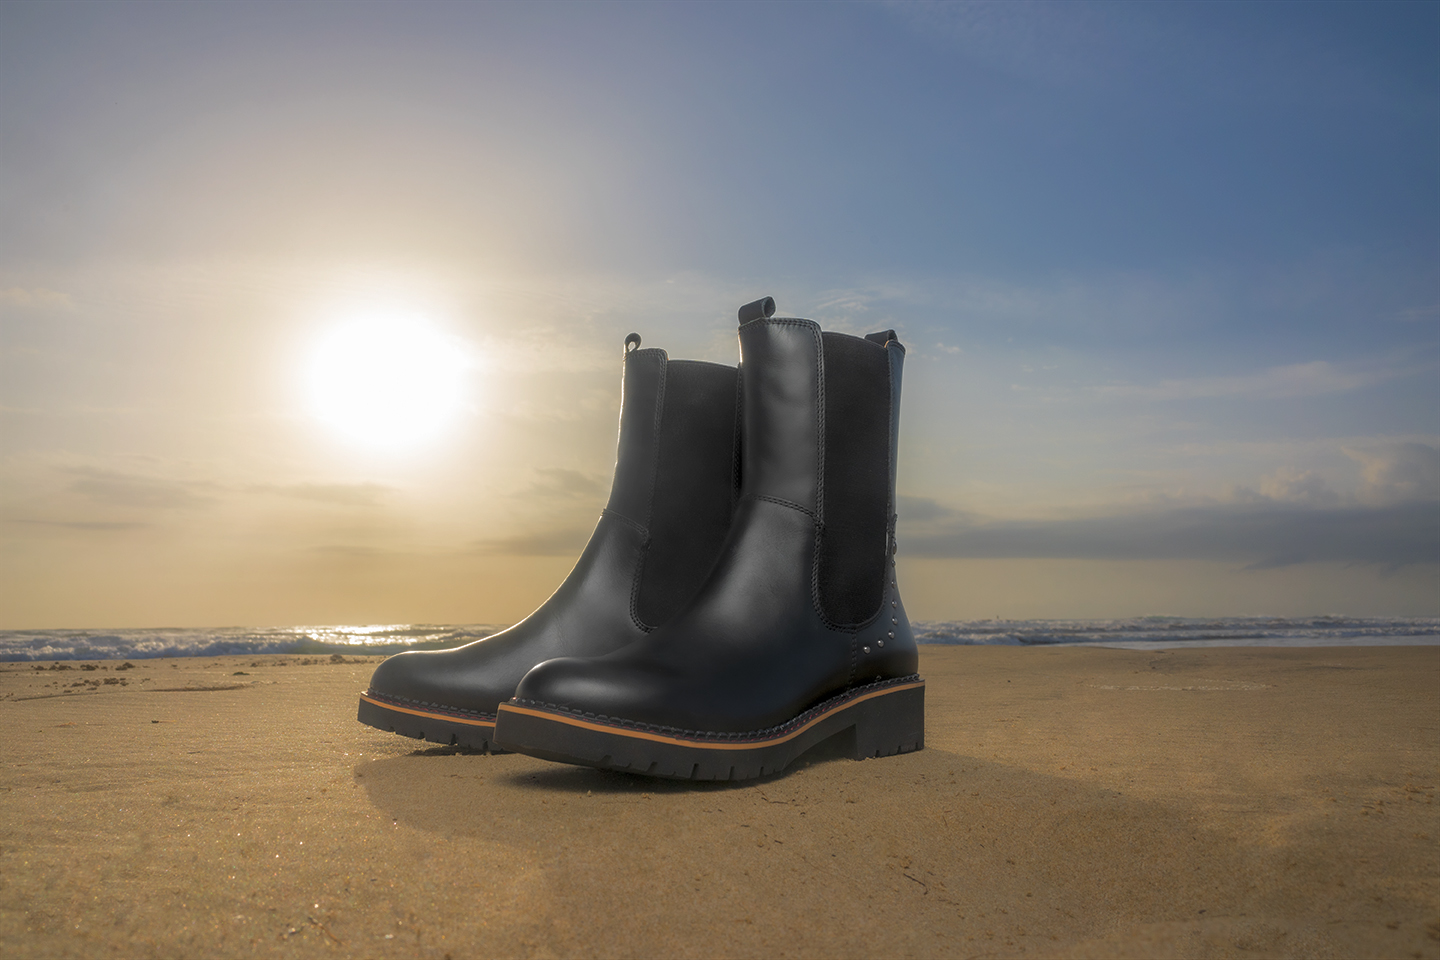 Imagen de unas botas Pikolinos de mujer en color negro en la arena de la playa.